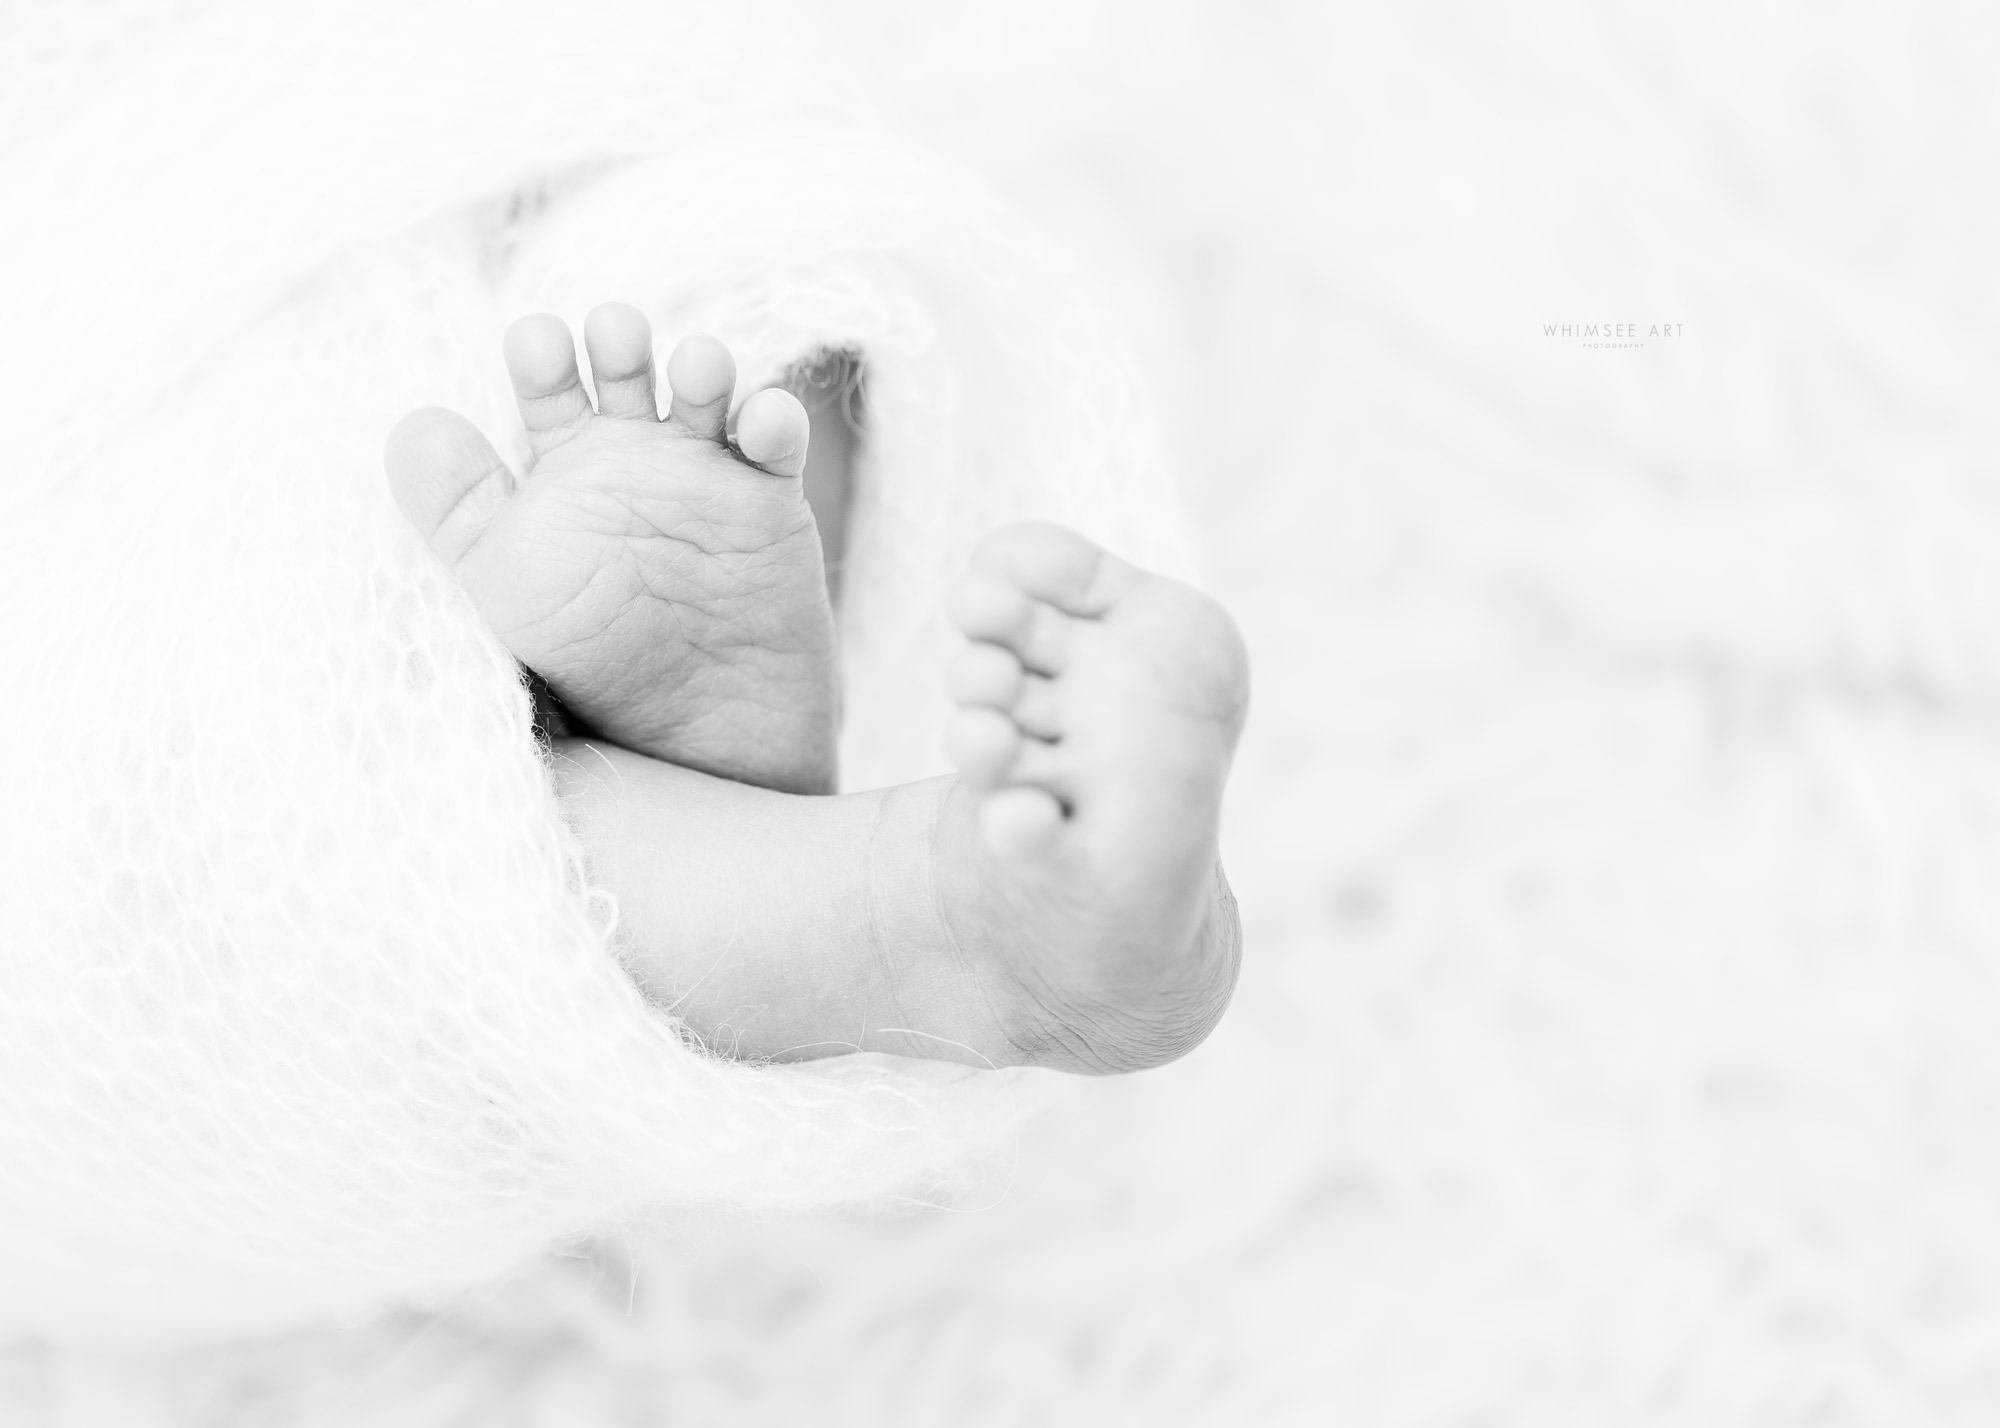 Roanoke Newborn Photographers | Whimsee Art Photography | Virginia Newborn Photographer